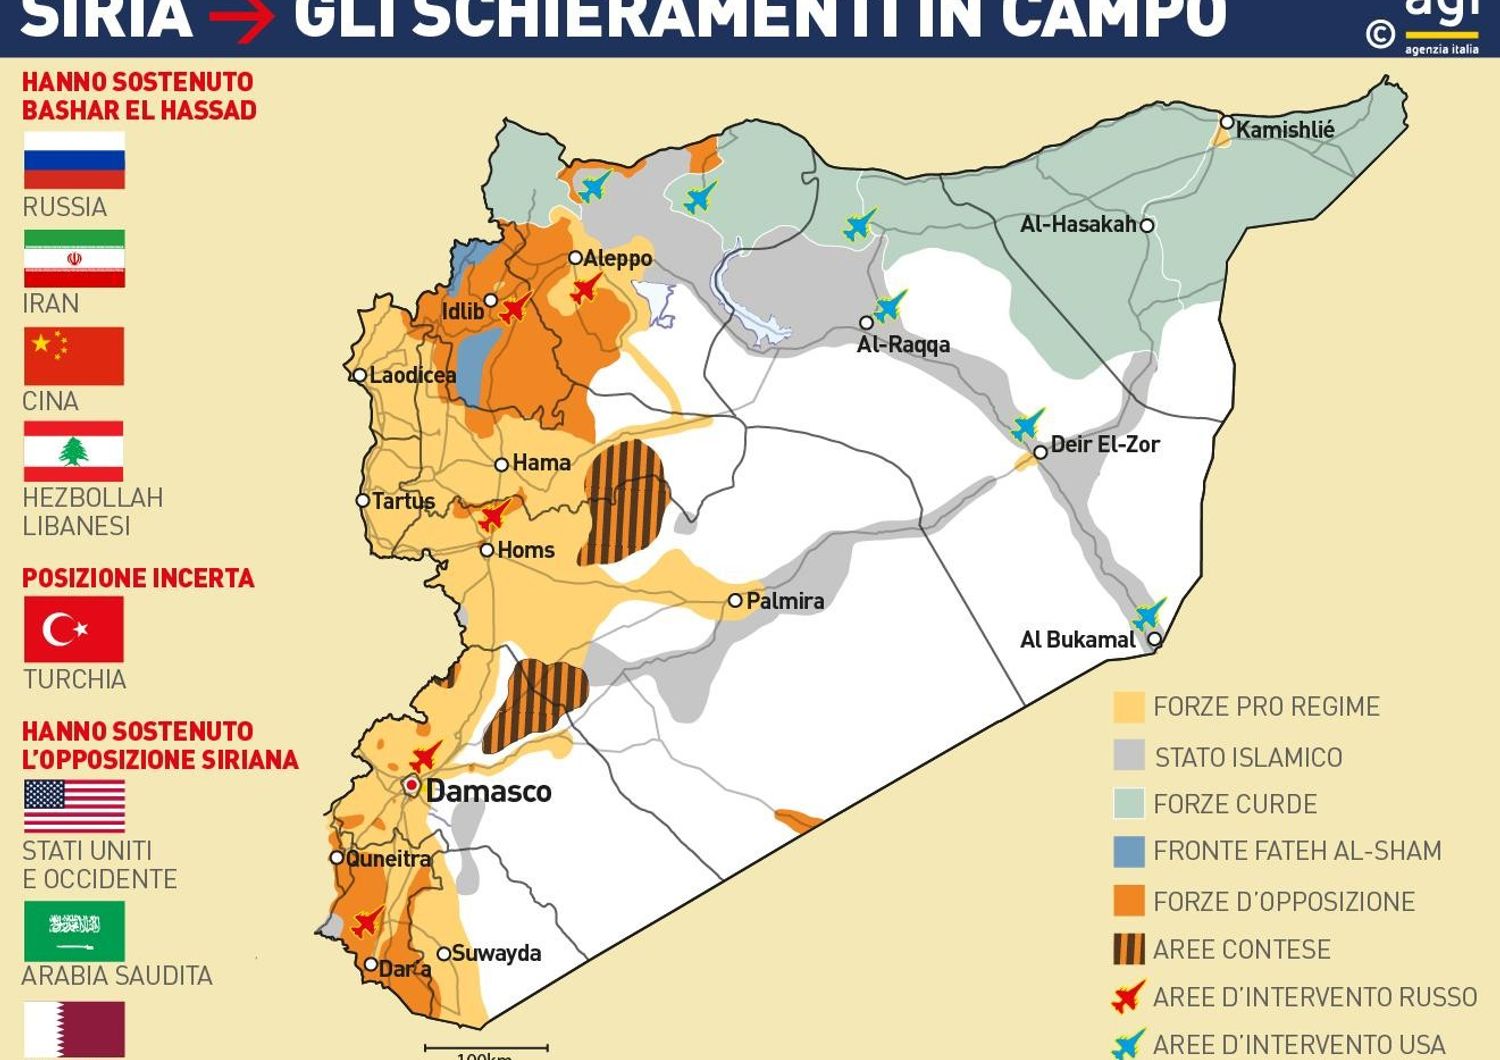 Siria gli schieramenti in campo &nbsp;- Infografica